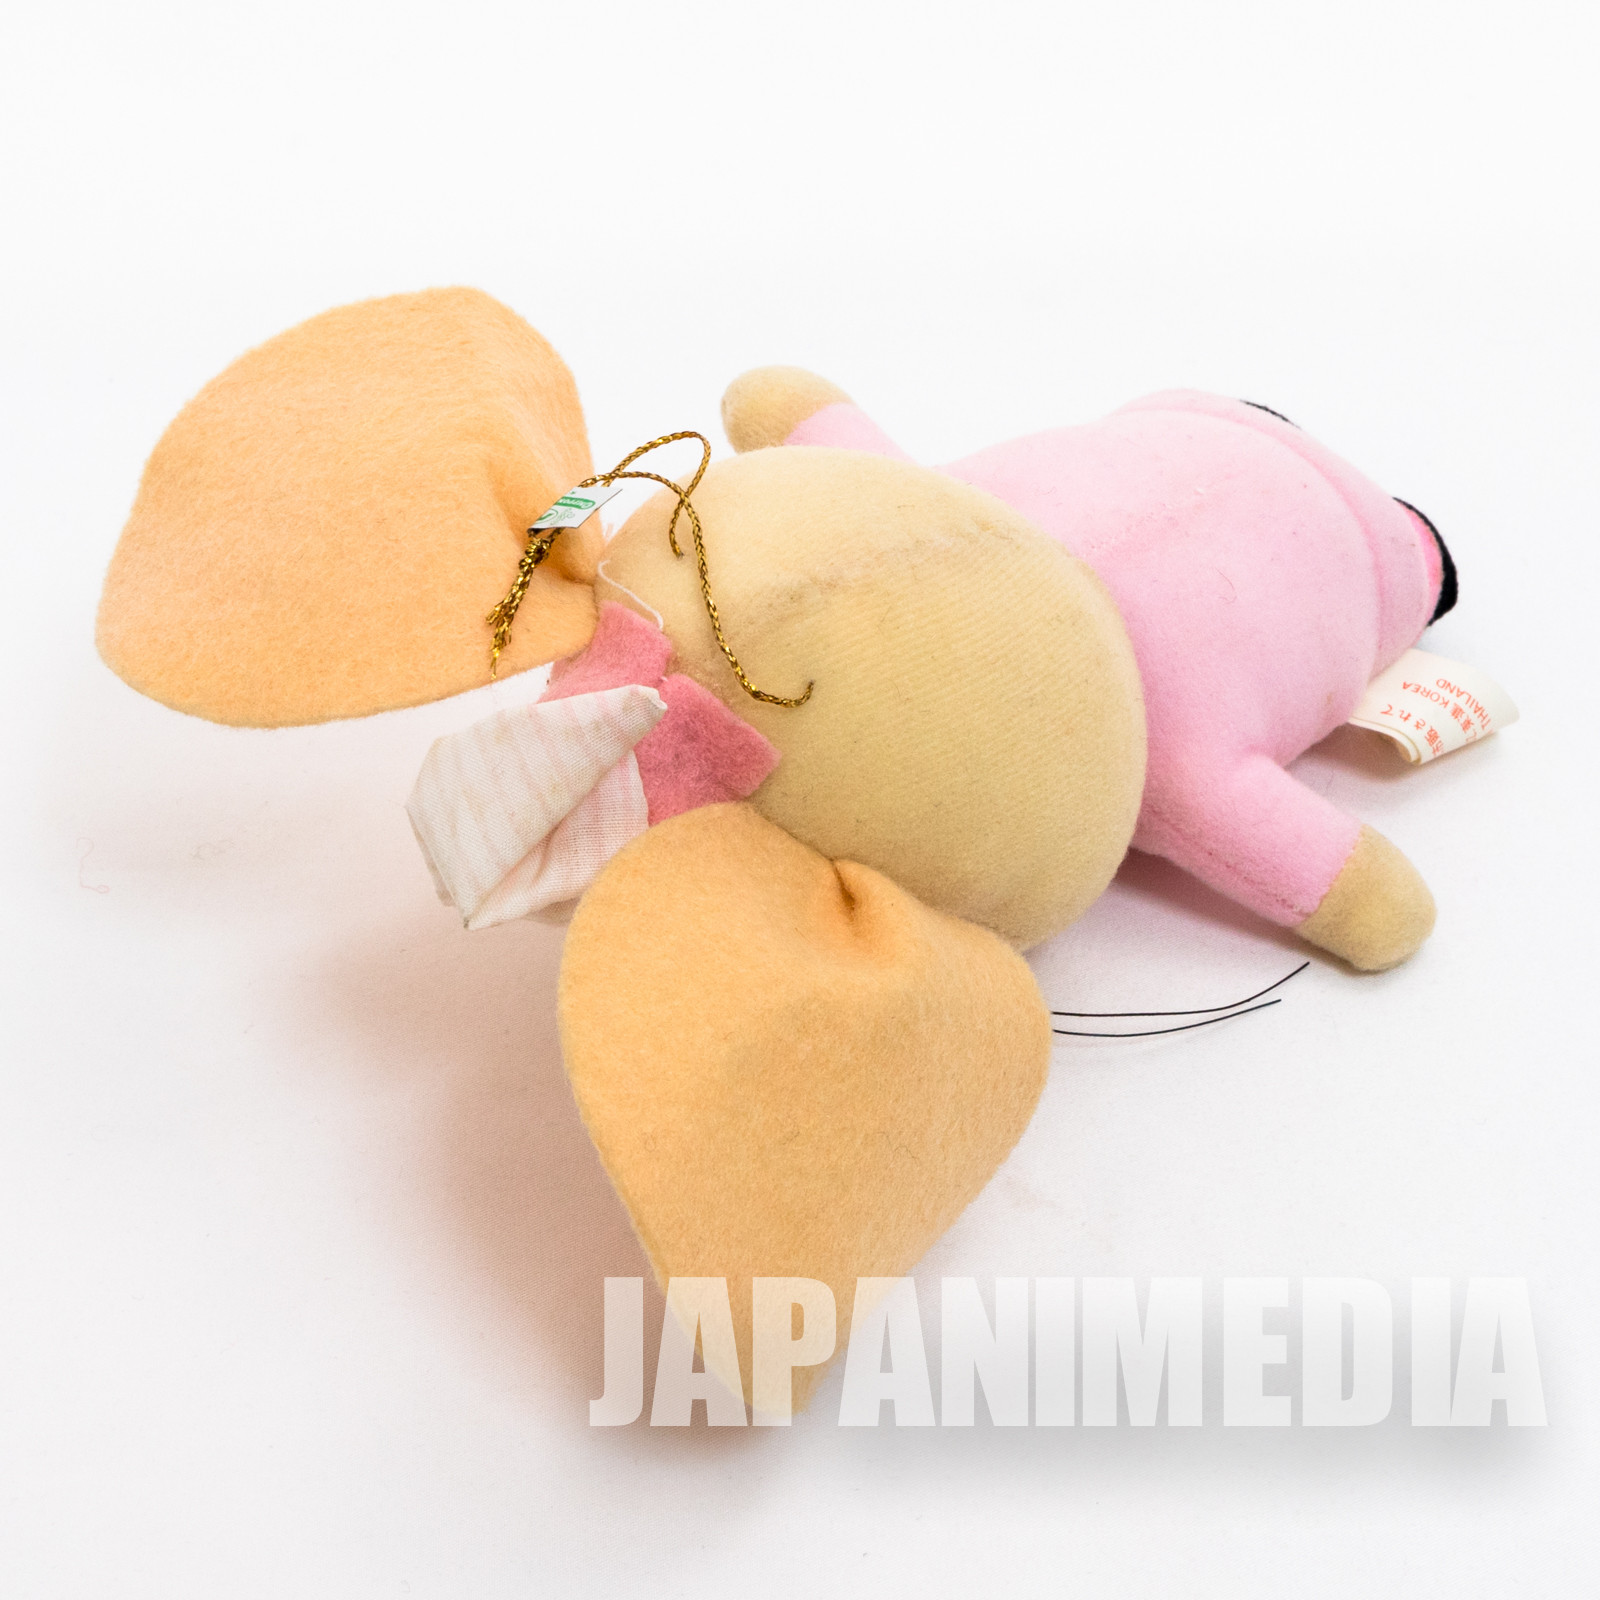 Topo Gigio 7" Plush Doll Pink JAPAN ANIME